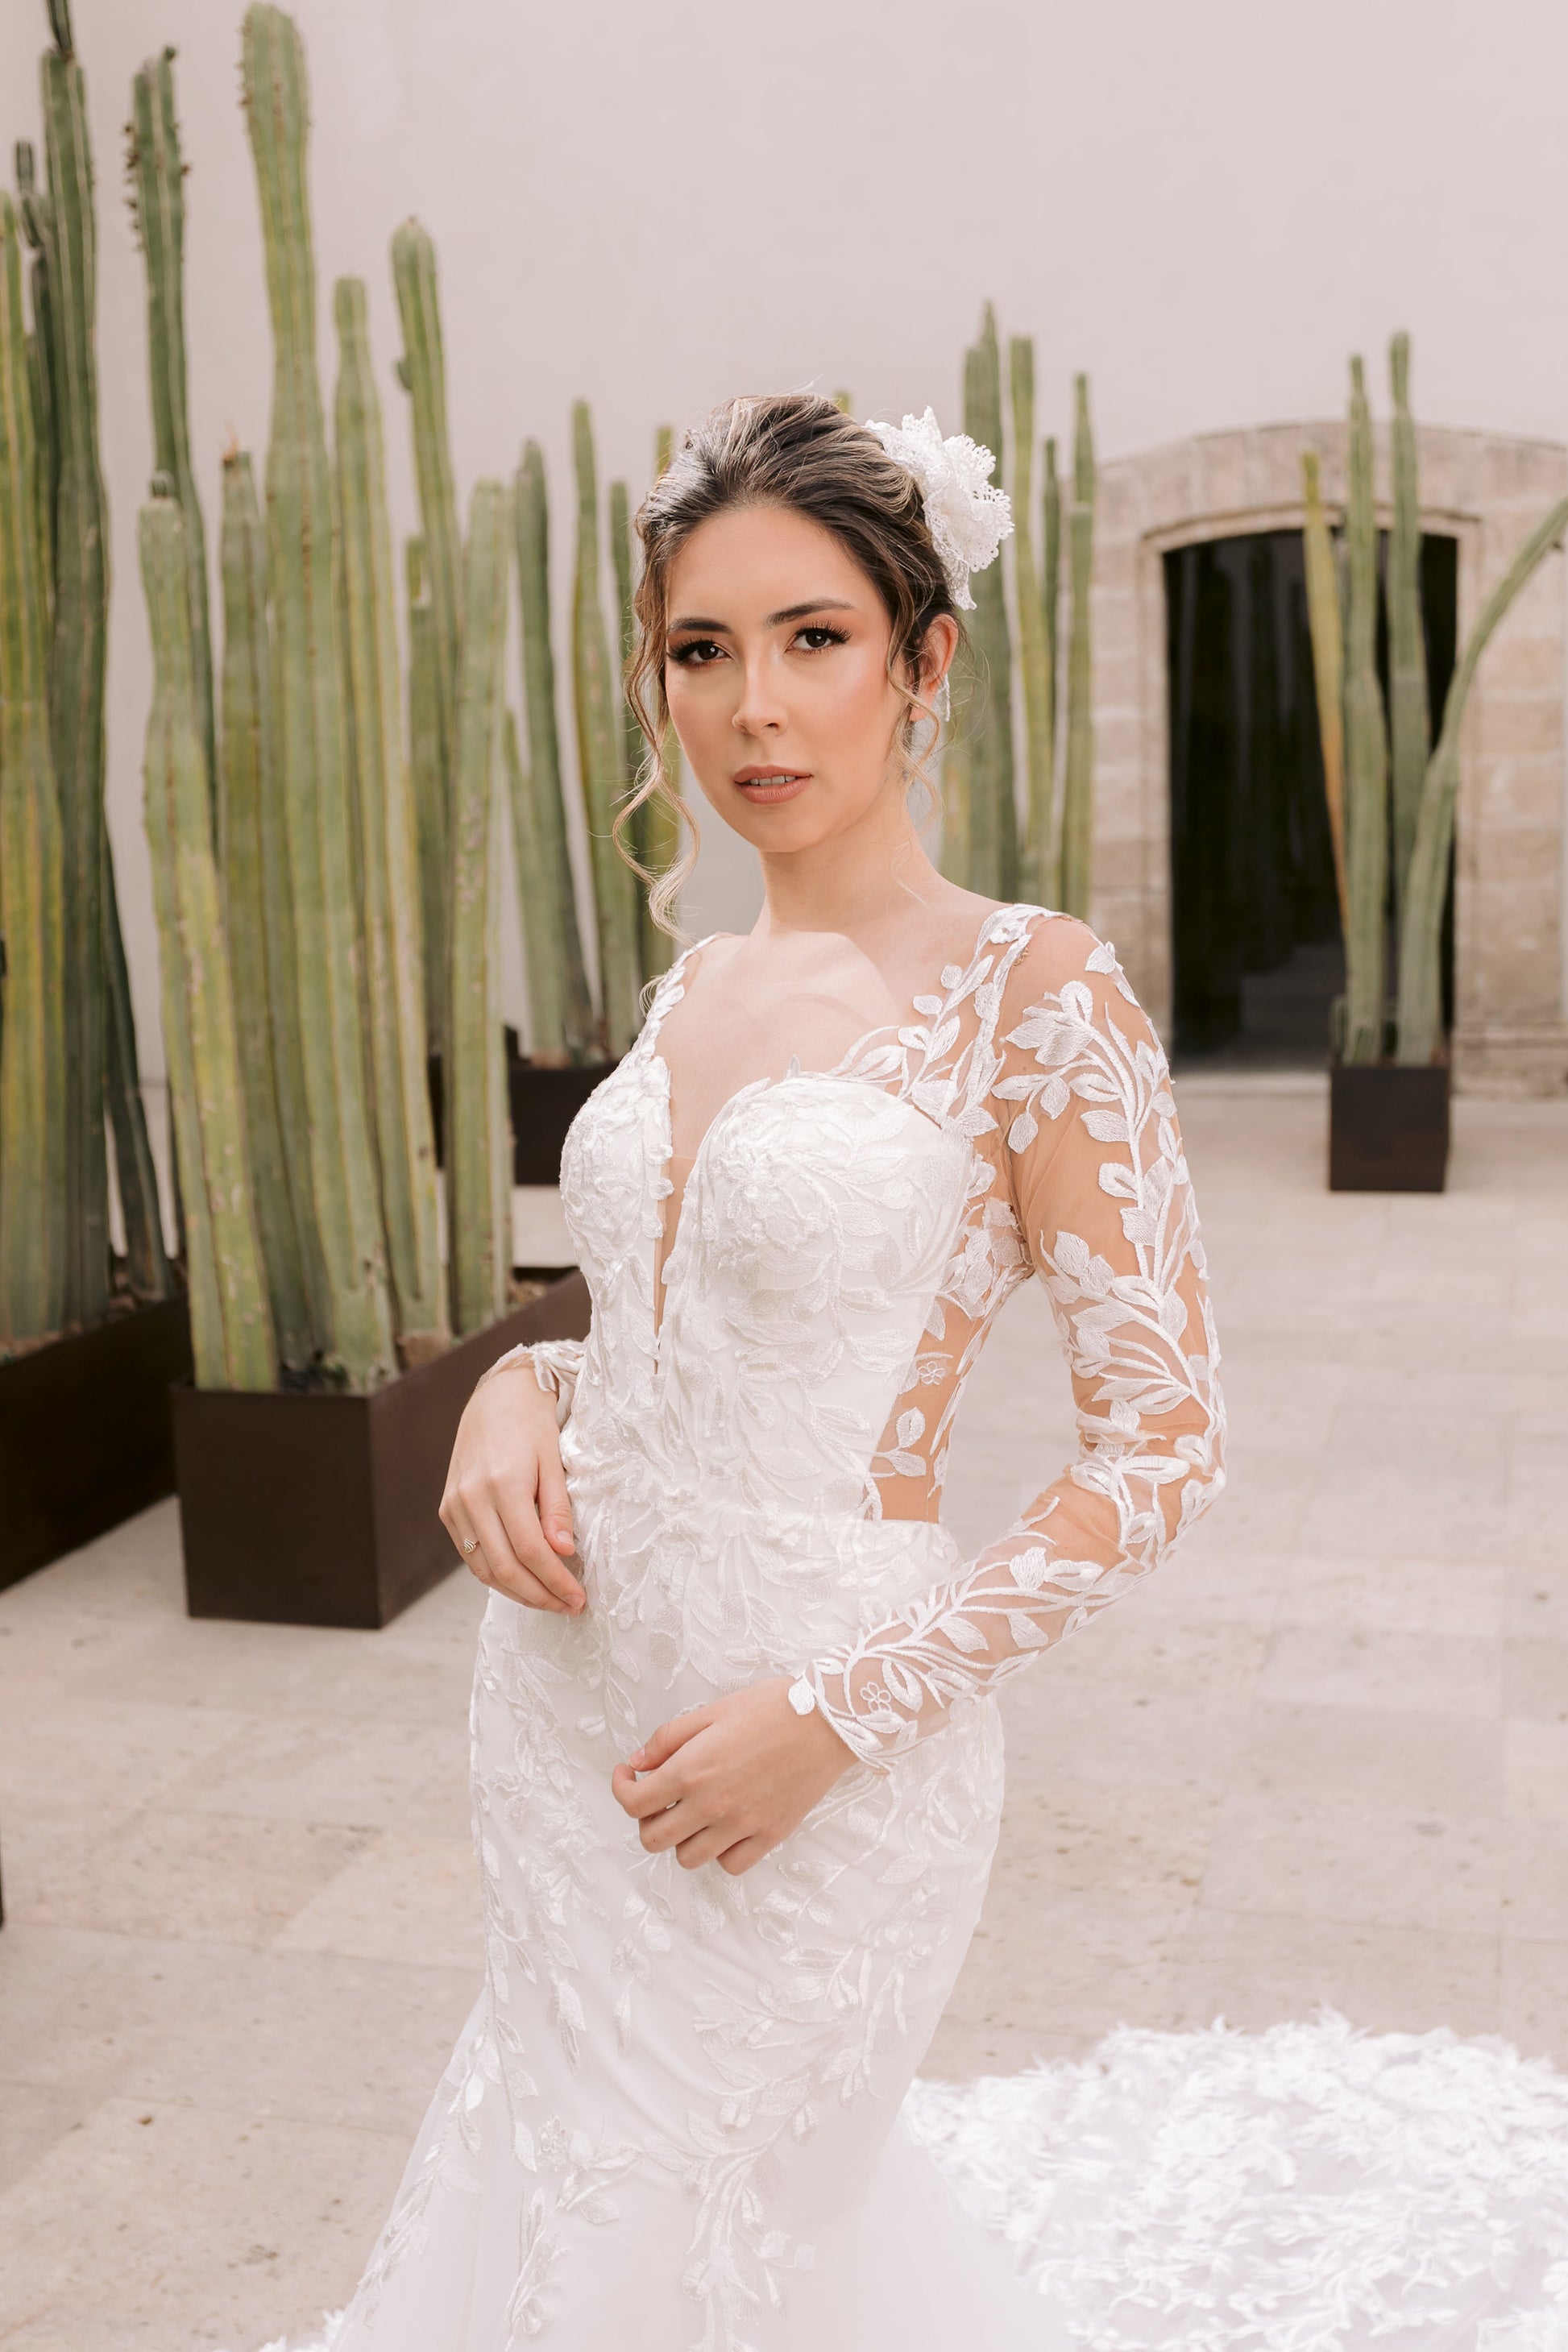 Vestido de novia blanco con flores bordadas corte a